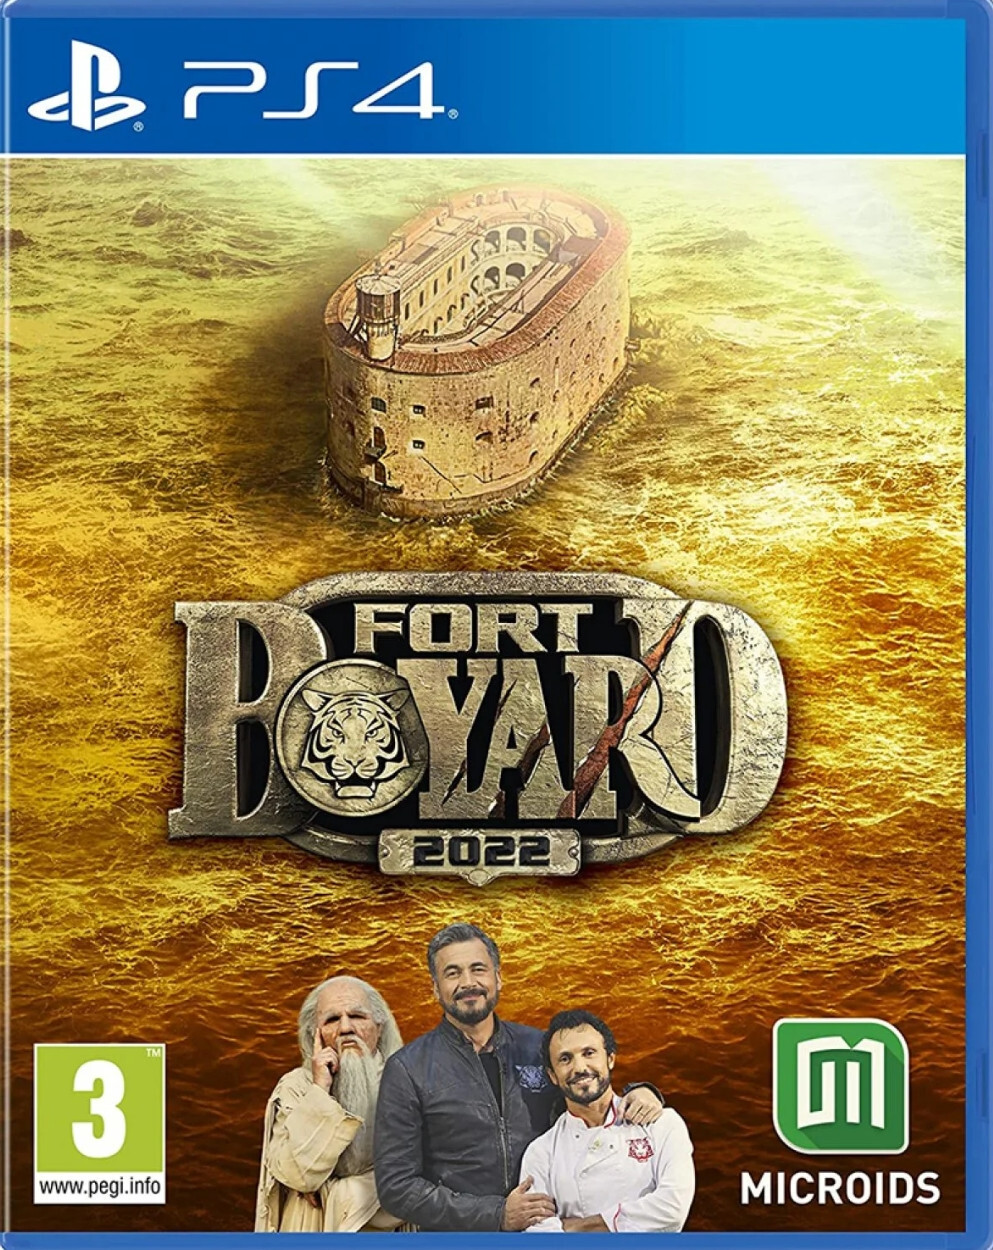 Microids Fort Boyard 2022 PlayStation 4